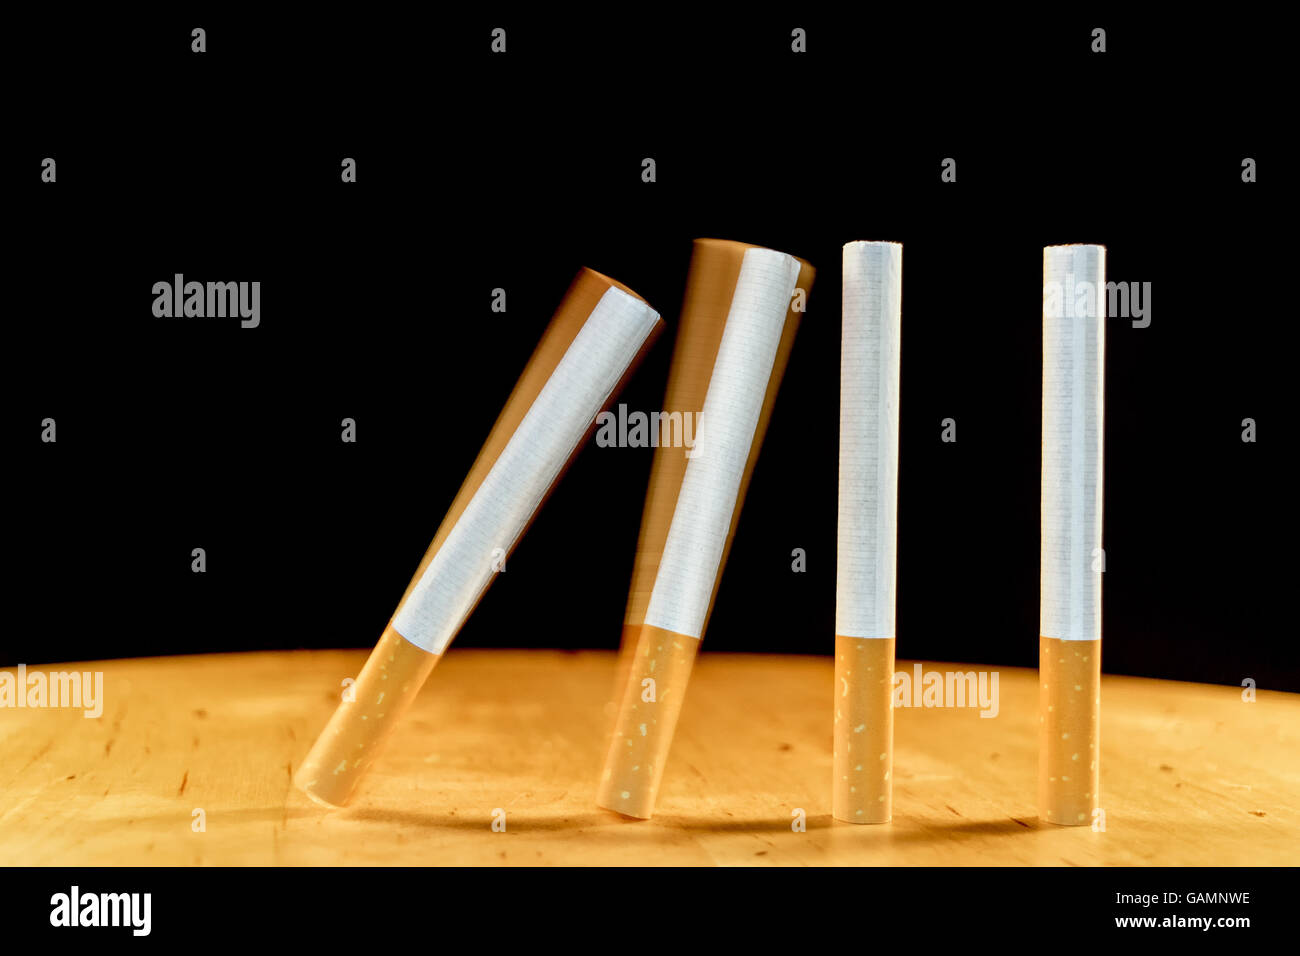 Zigaretten-Domino fallen als ein Konzept der sucht, die Zigaretten zu erstellen. Eine Zigarette bringt eine andere. Stockfoto